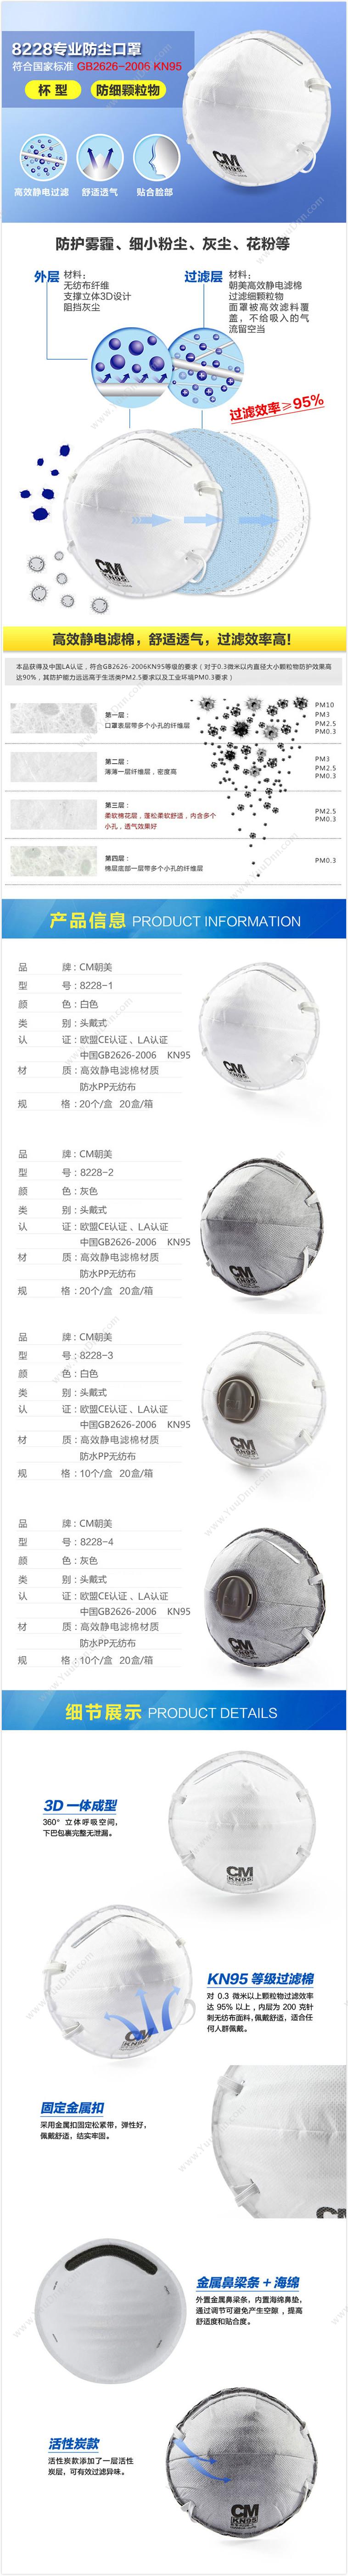 朝美 CM 8228-1 杯型口罩 KN95  400只/箱 防护口罩